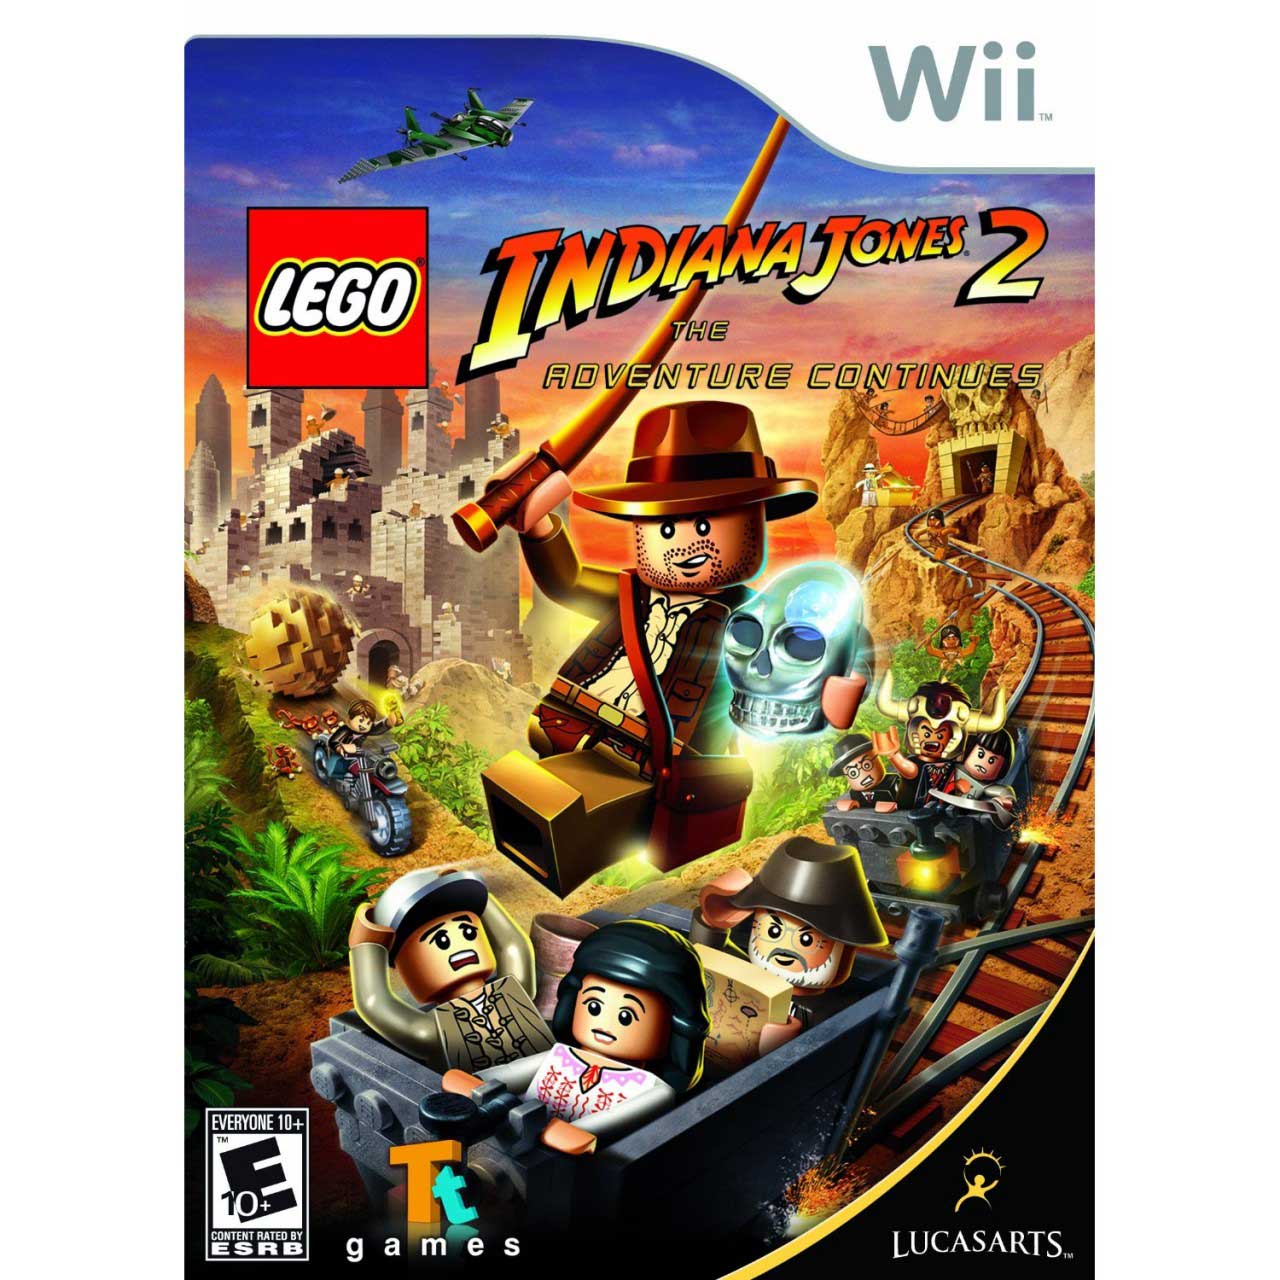 Indiana Jones Lego Wii Game Walkthrough